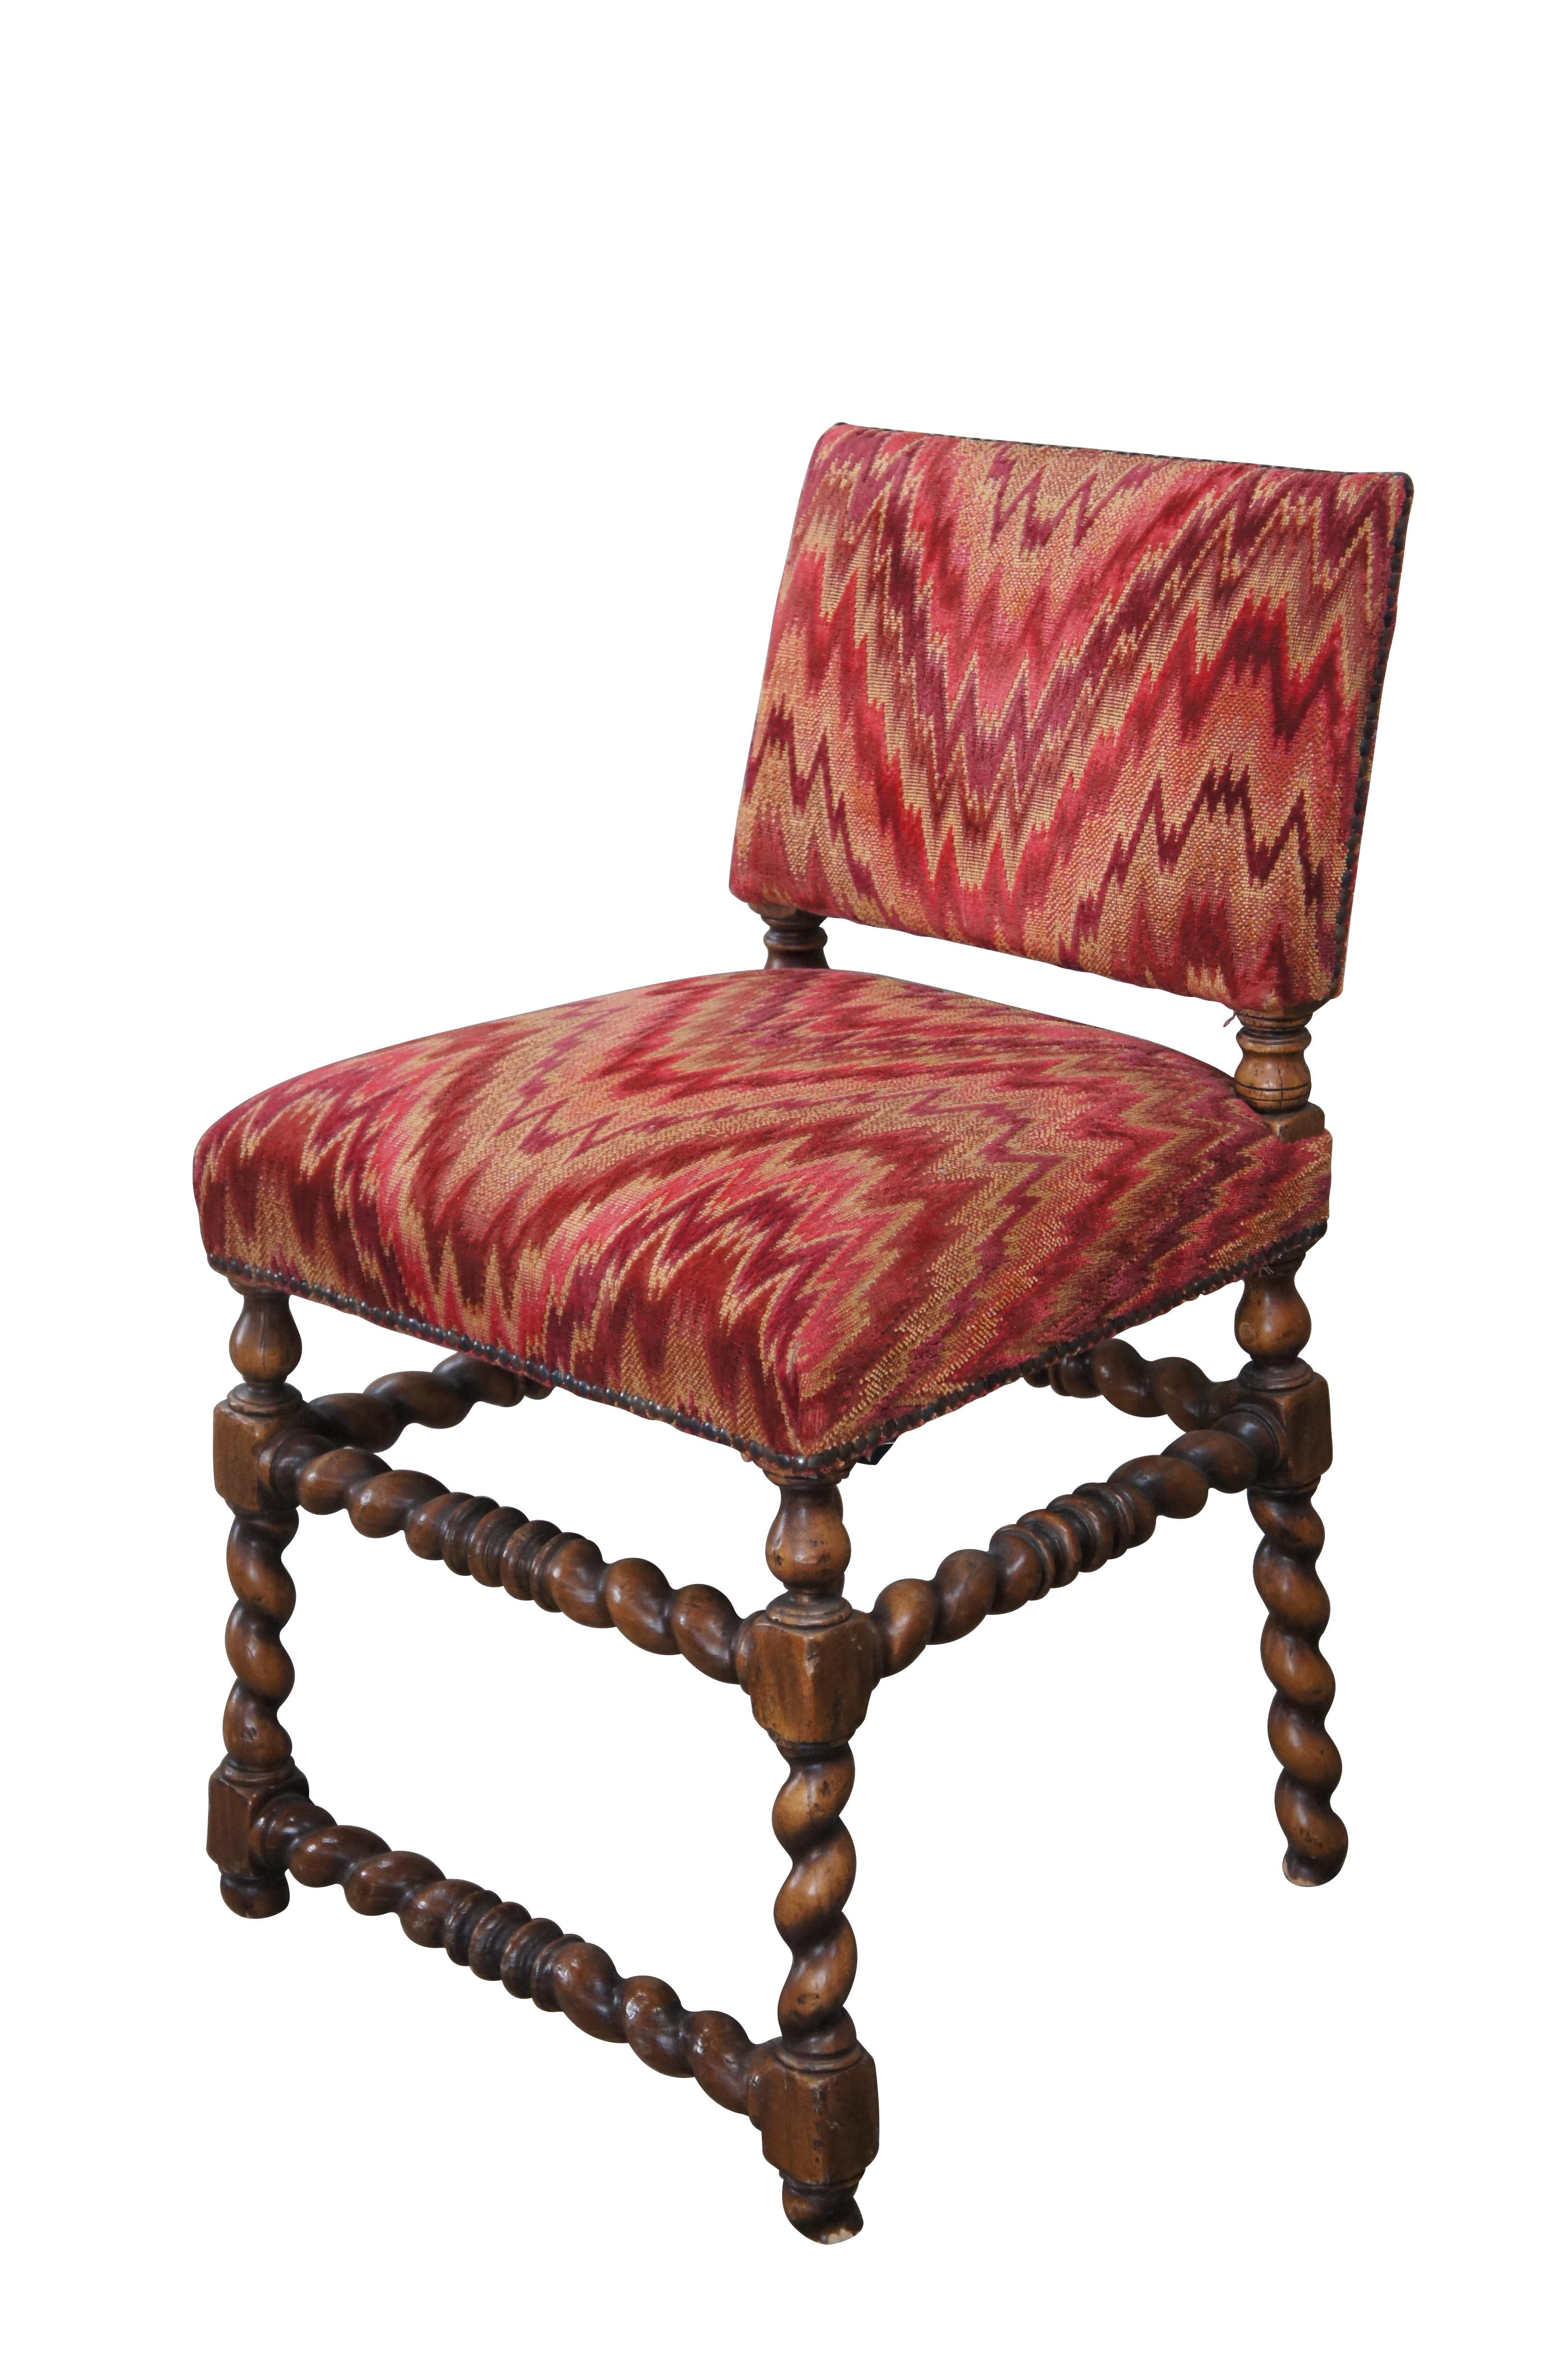 Vintage Spanish oak barley twisted vanity chair mit einer hübschen roten Southwestern-Polsterung mit Nagelkopfverzierung.

Abmessungen:
21